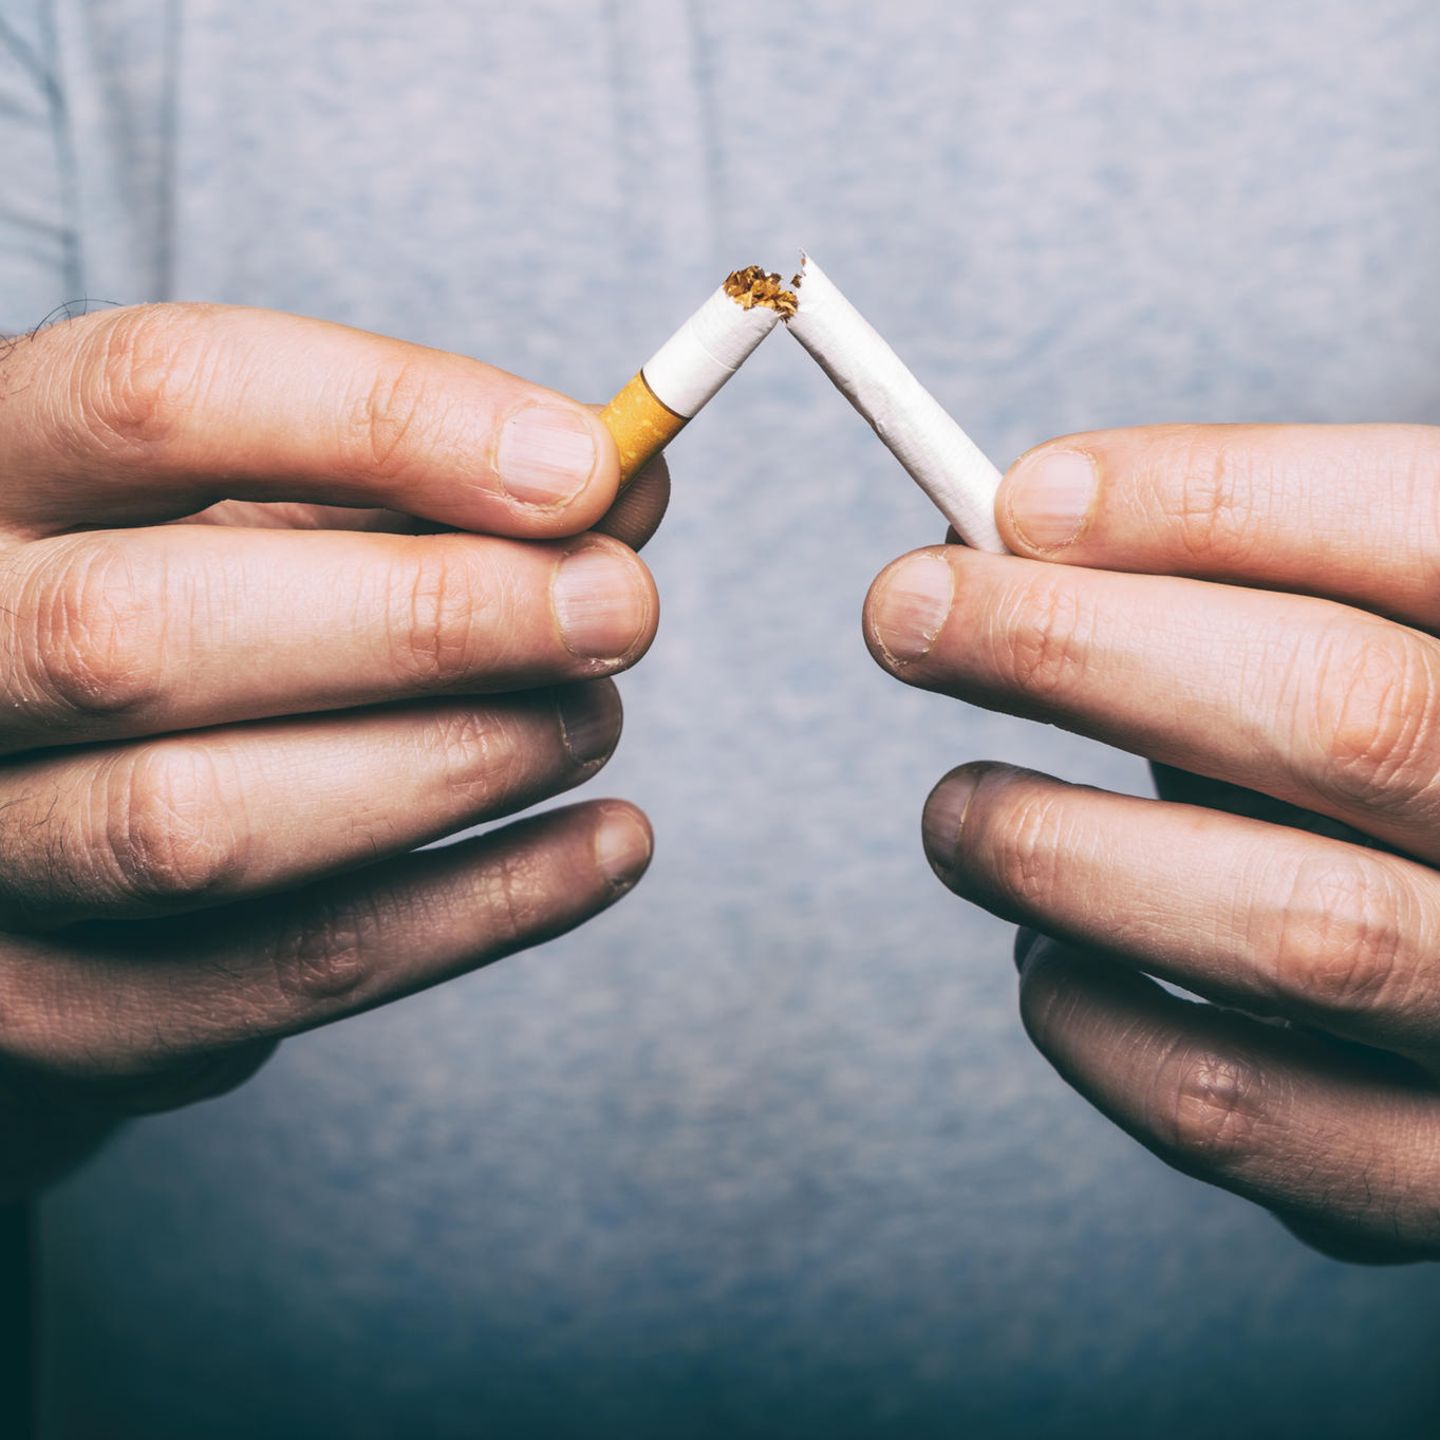 Nikotinpflaster Ersetzen Sie Nikotinmethode Gesundheitsaufkleber lindern  Rauchsucht Tabakkontrolle Aufkleber helfen, mit dem Rauchen aufzuhören